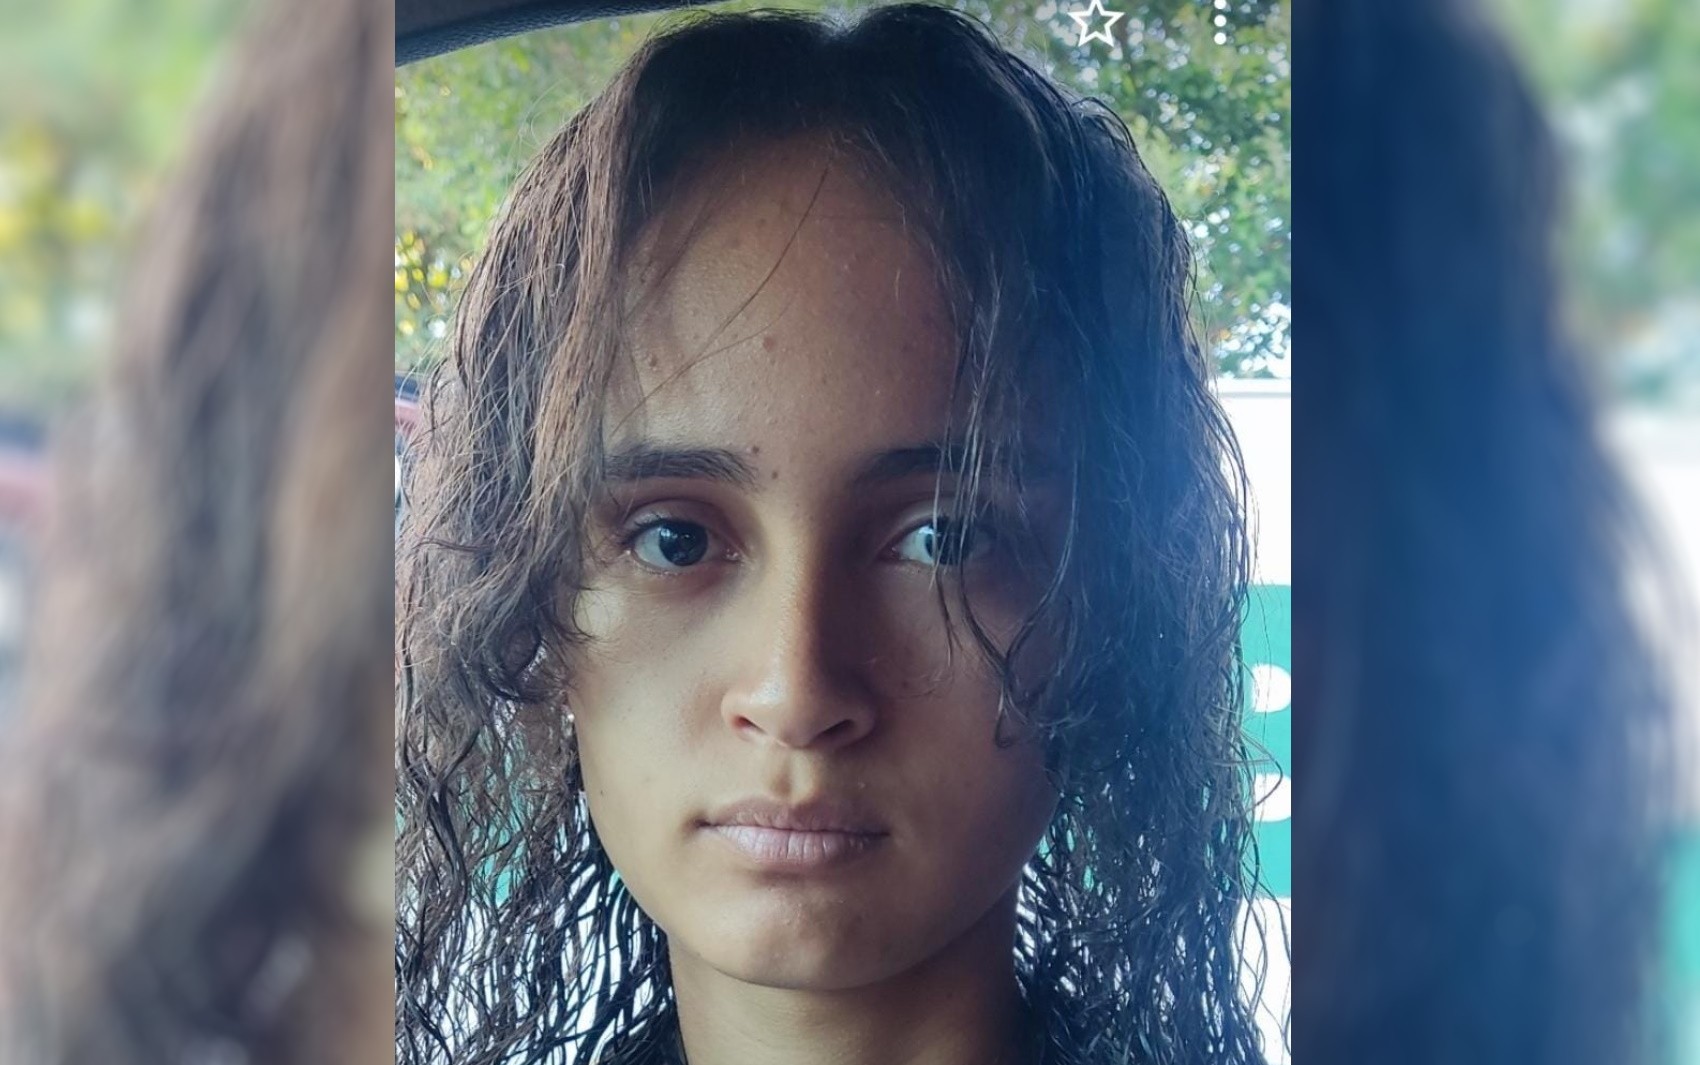 Família pede ajuda para encontrar adolescente que está desaparecida há mais de um mês, em Aparecida de Goiânia